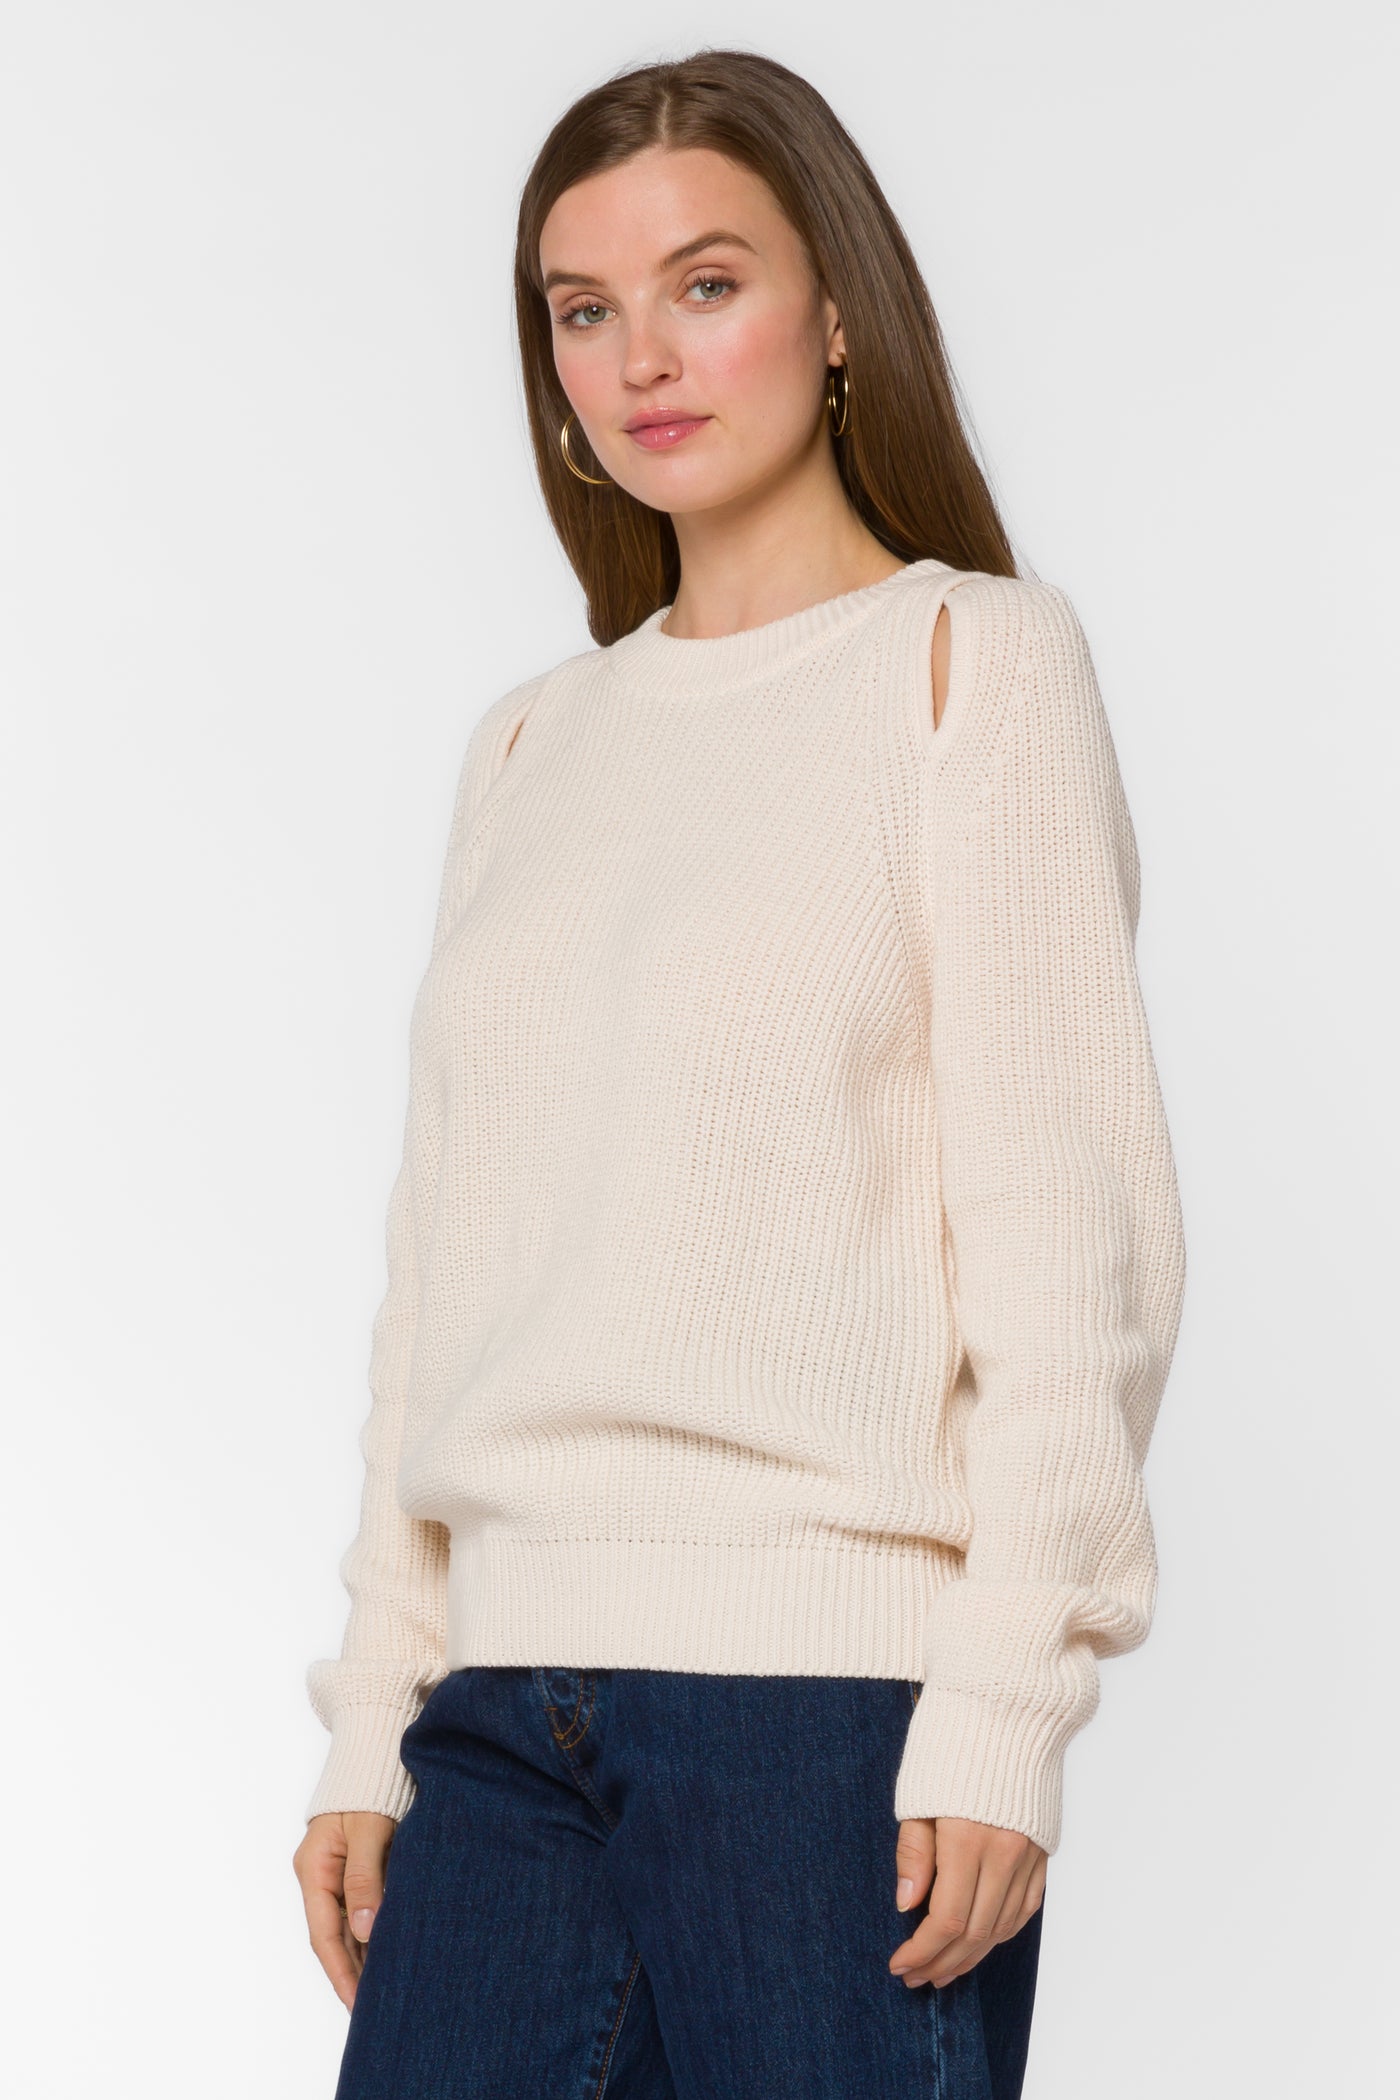 Roya Ivory Sweater - Sweaters - Velvet Heart Clothing